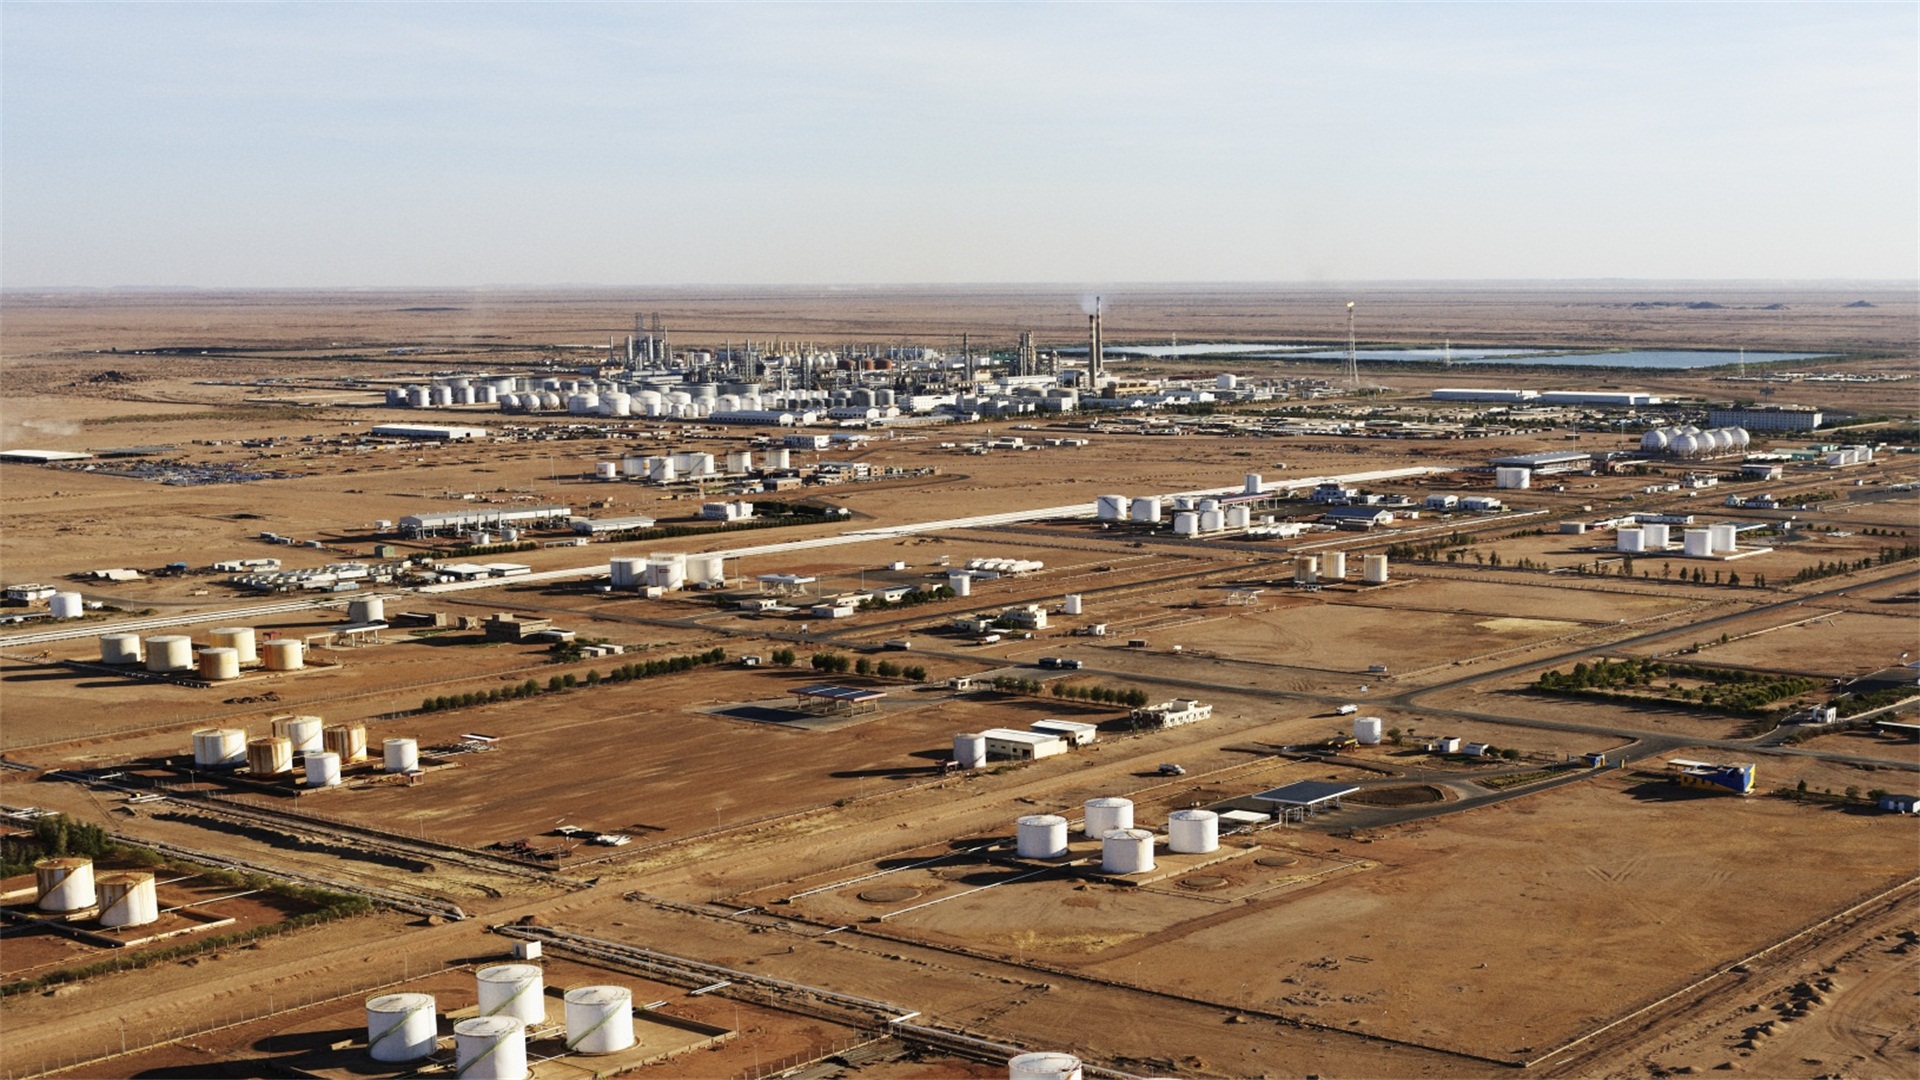 【蘇丹樣本】                      喀土穆煉廠被蘇丹人稱為“尼羅河畔的明珠”。煉廠建成后，蘇丹建立起上下游一體的現代化石油工業體系，不僅滿足了自身成品油需求，而且實現了部分出口。蘇丹從石油進口國一躍成為石油出口國，國家財政狀況大為好轉。                                 隱藏文字說明